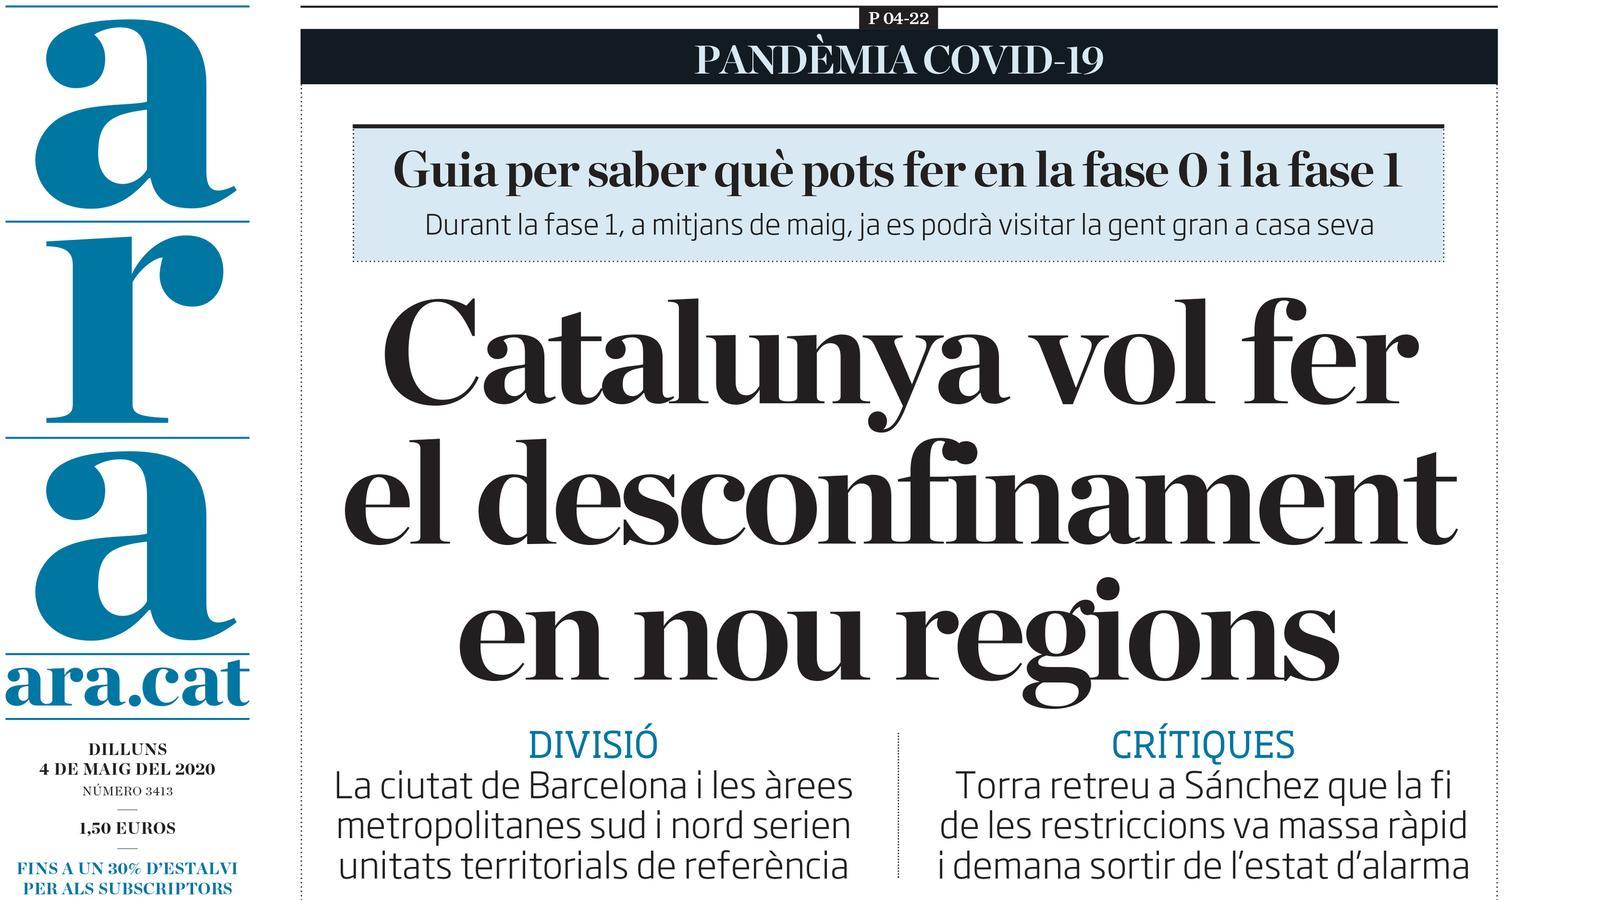 "Catalunya vol fer el desconfinament en nou regions", portada de l'ARA